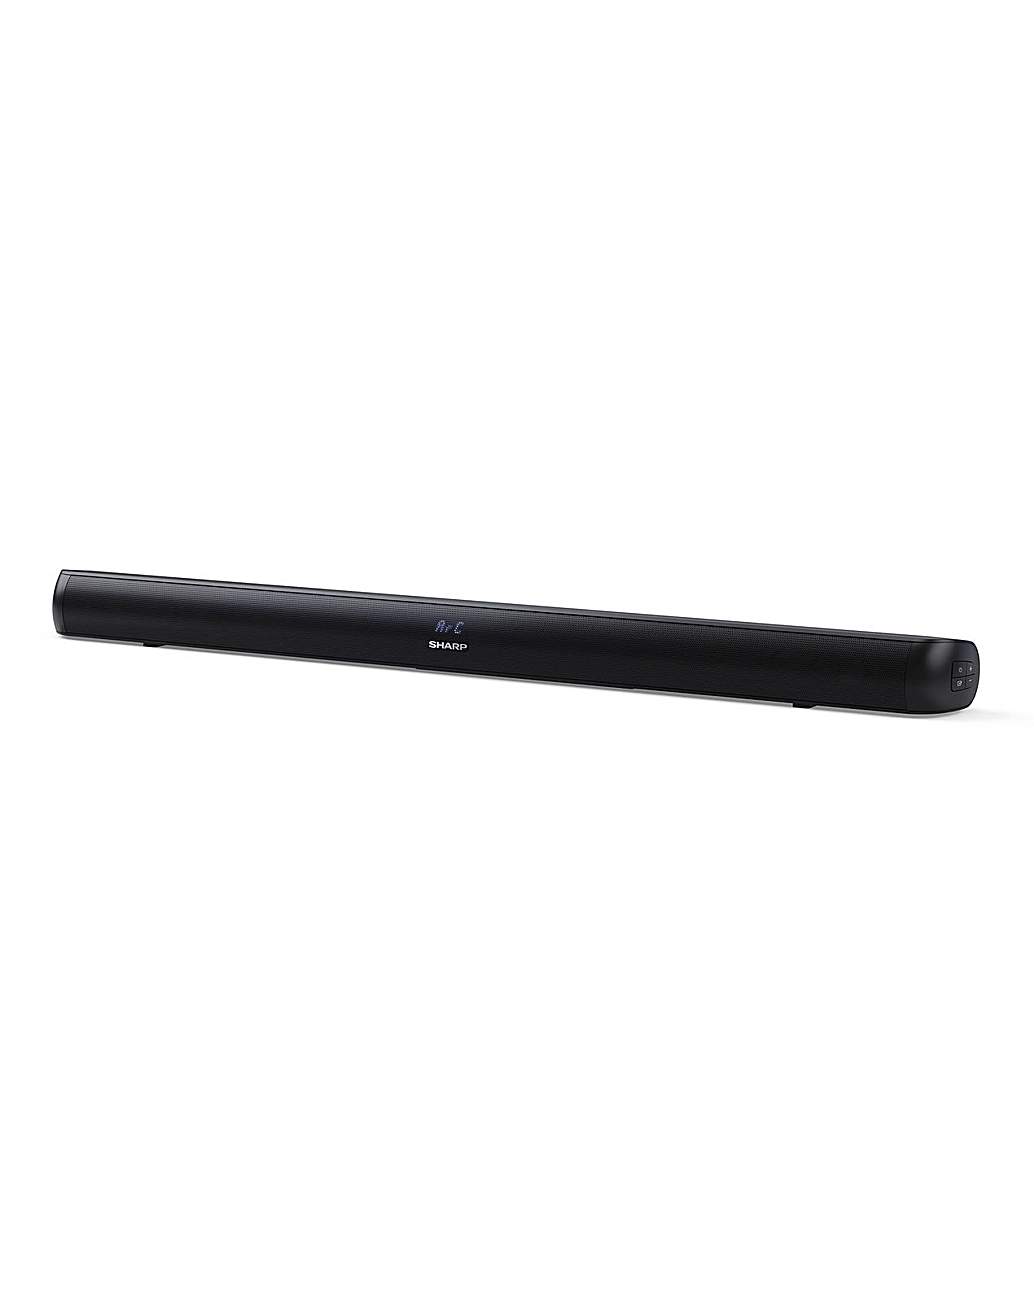 Sharp HT-SB147 2.0ch 150W Soundbar | Home Essentials